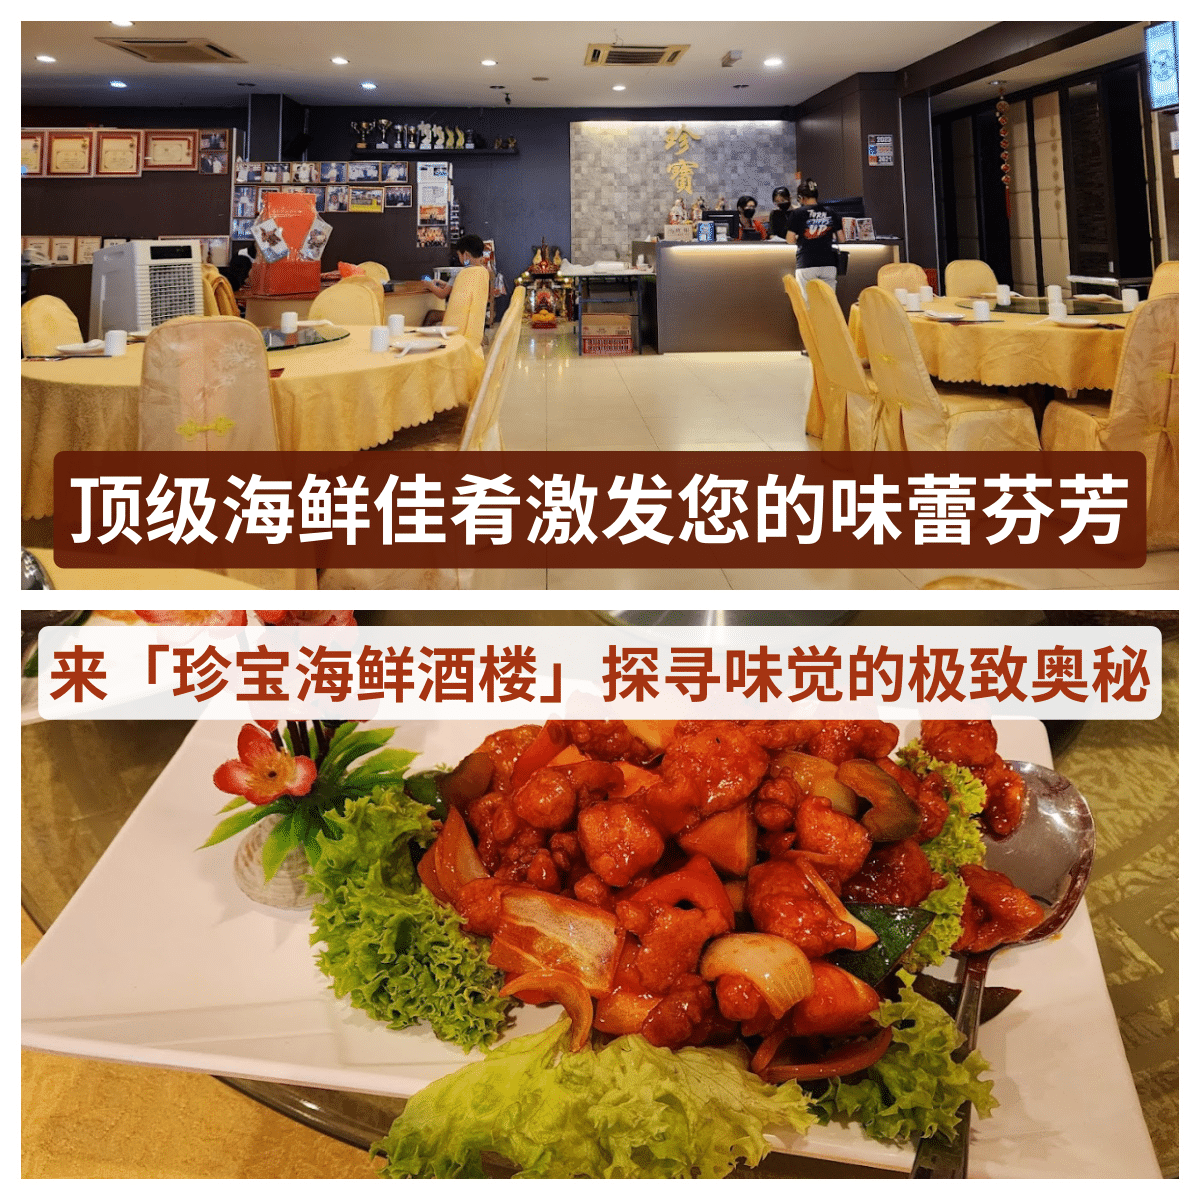 “马来西亚的「 珍宝海鲜酒楼 」：一场视觉与味觉的双重盛宴，带你走进中华美食的魅力世界。”